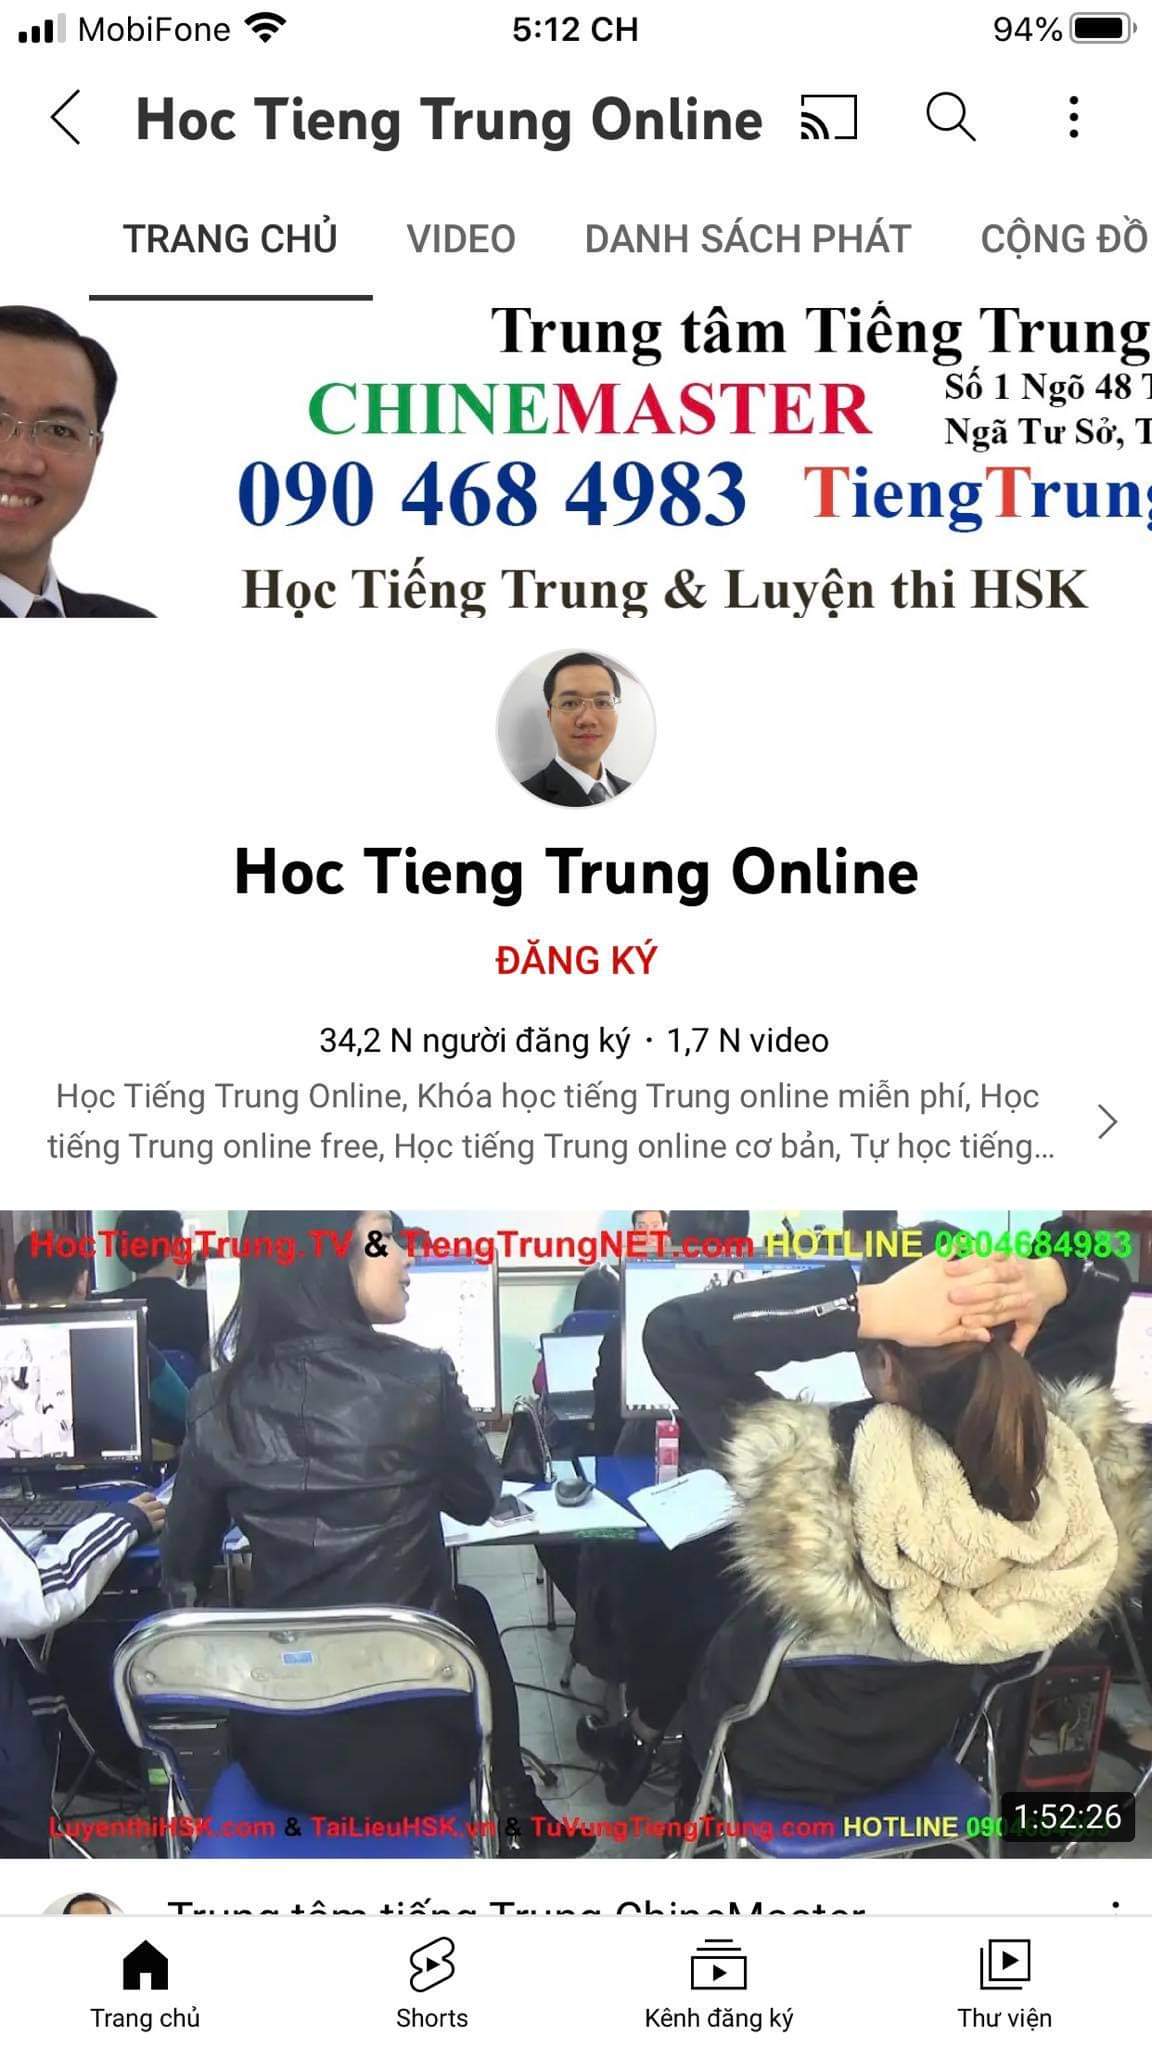 Trung tâm tiếng Trung ChineMaster chuyên phát sóng tường thuật trực tiếp các buổi đáo tạo trực tuyến miễn phí của Thạc sỹ Nguyễn Minh Vũ.